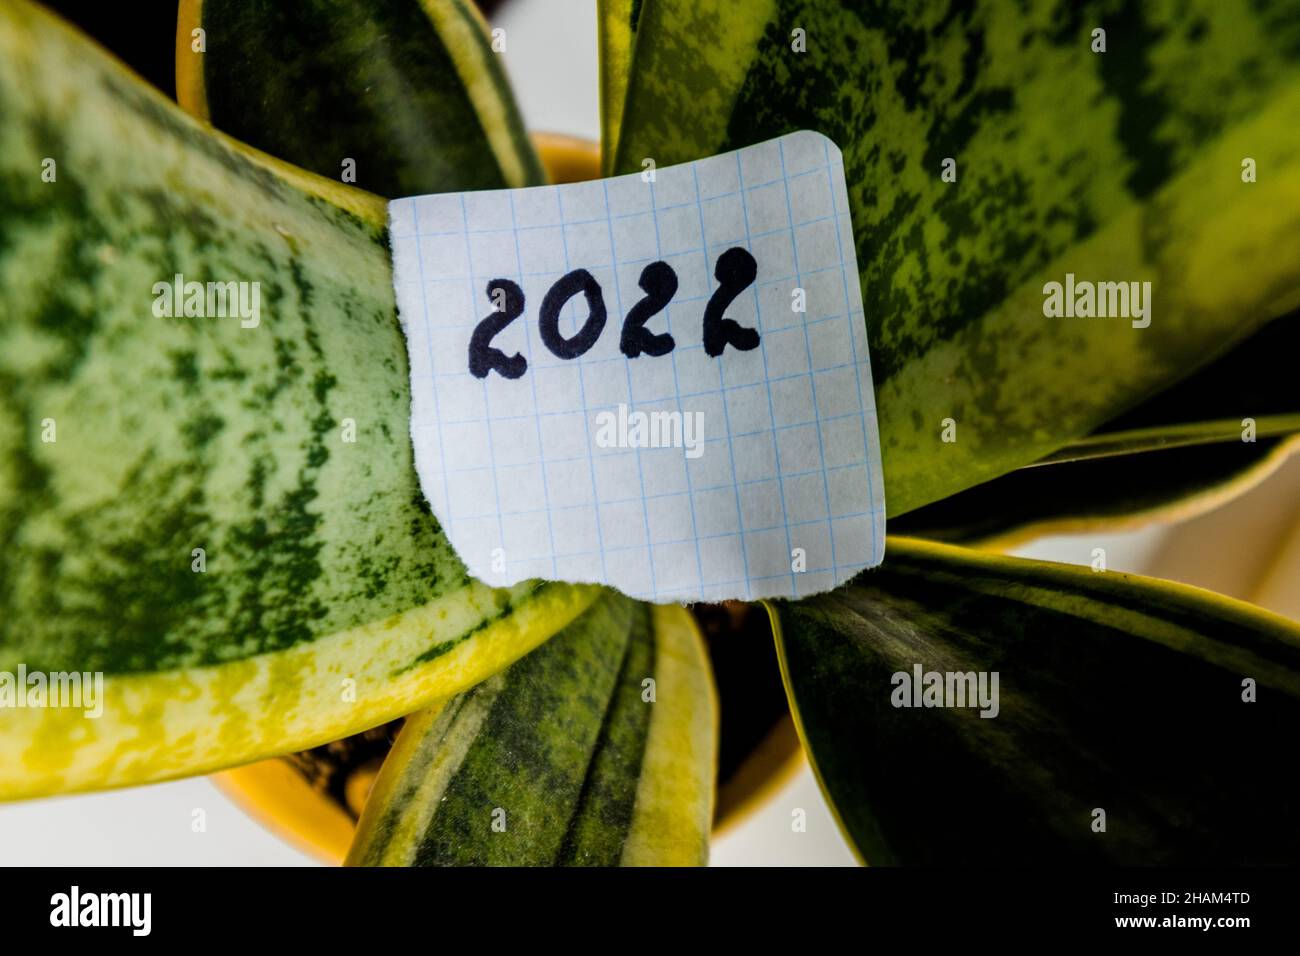 Neues Jahr 2022. Die Zahl 2022 ist auf ein Stück Papier geschrieben und liegt auf den grünen Blättern einer Hauspflanze. Stockfoto